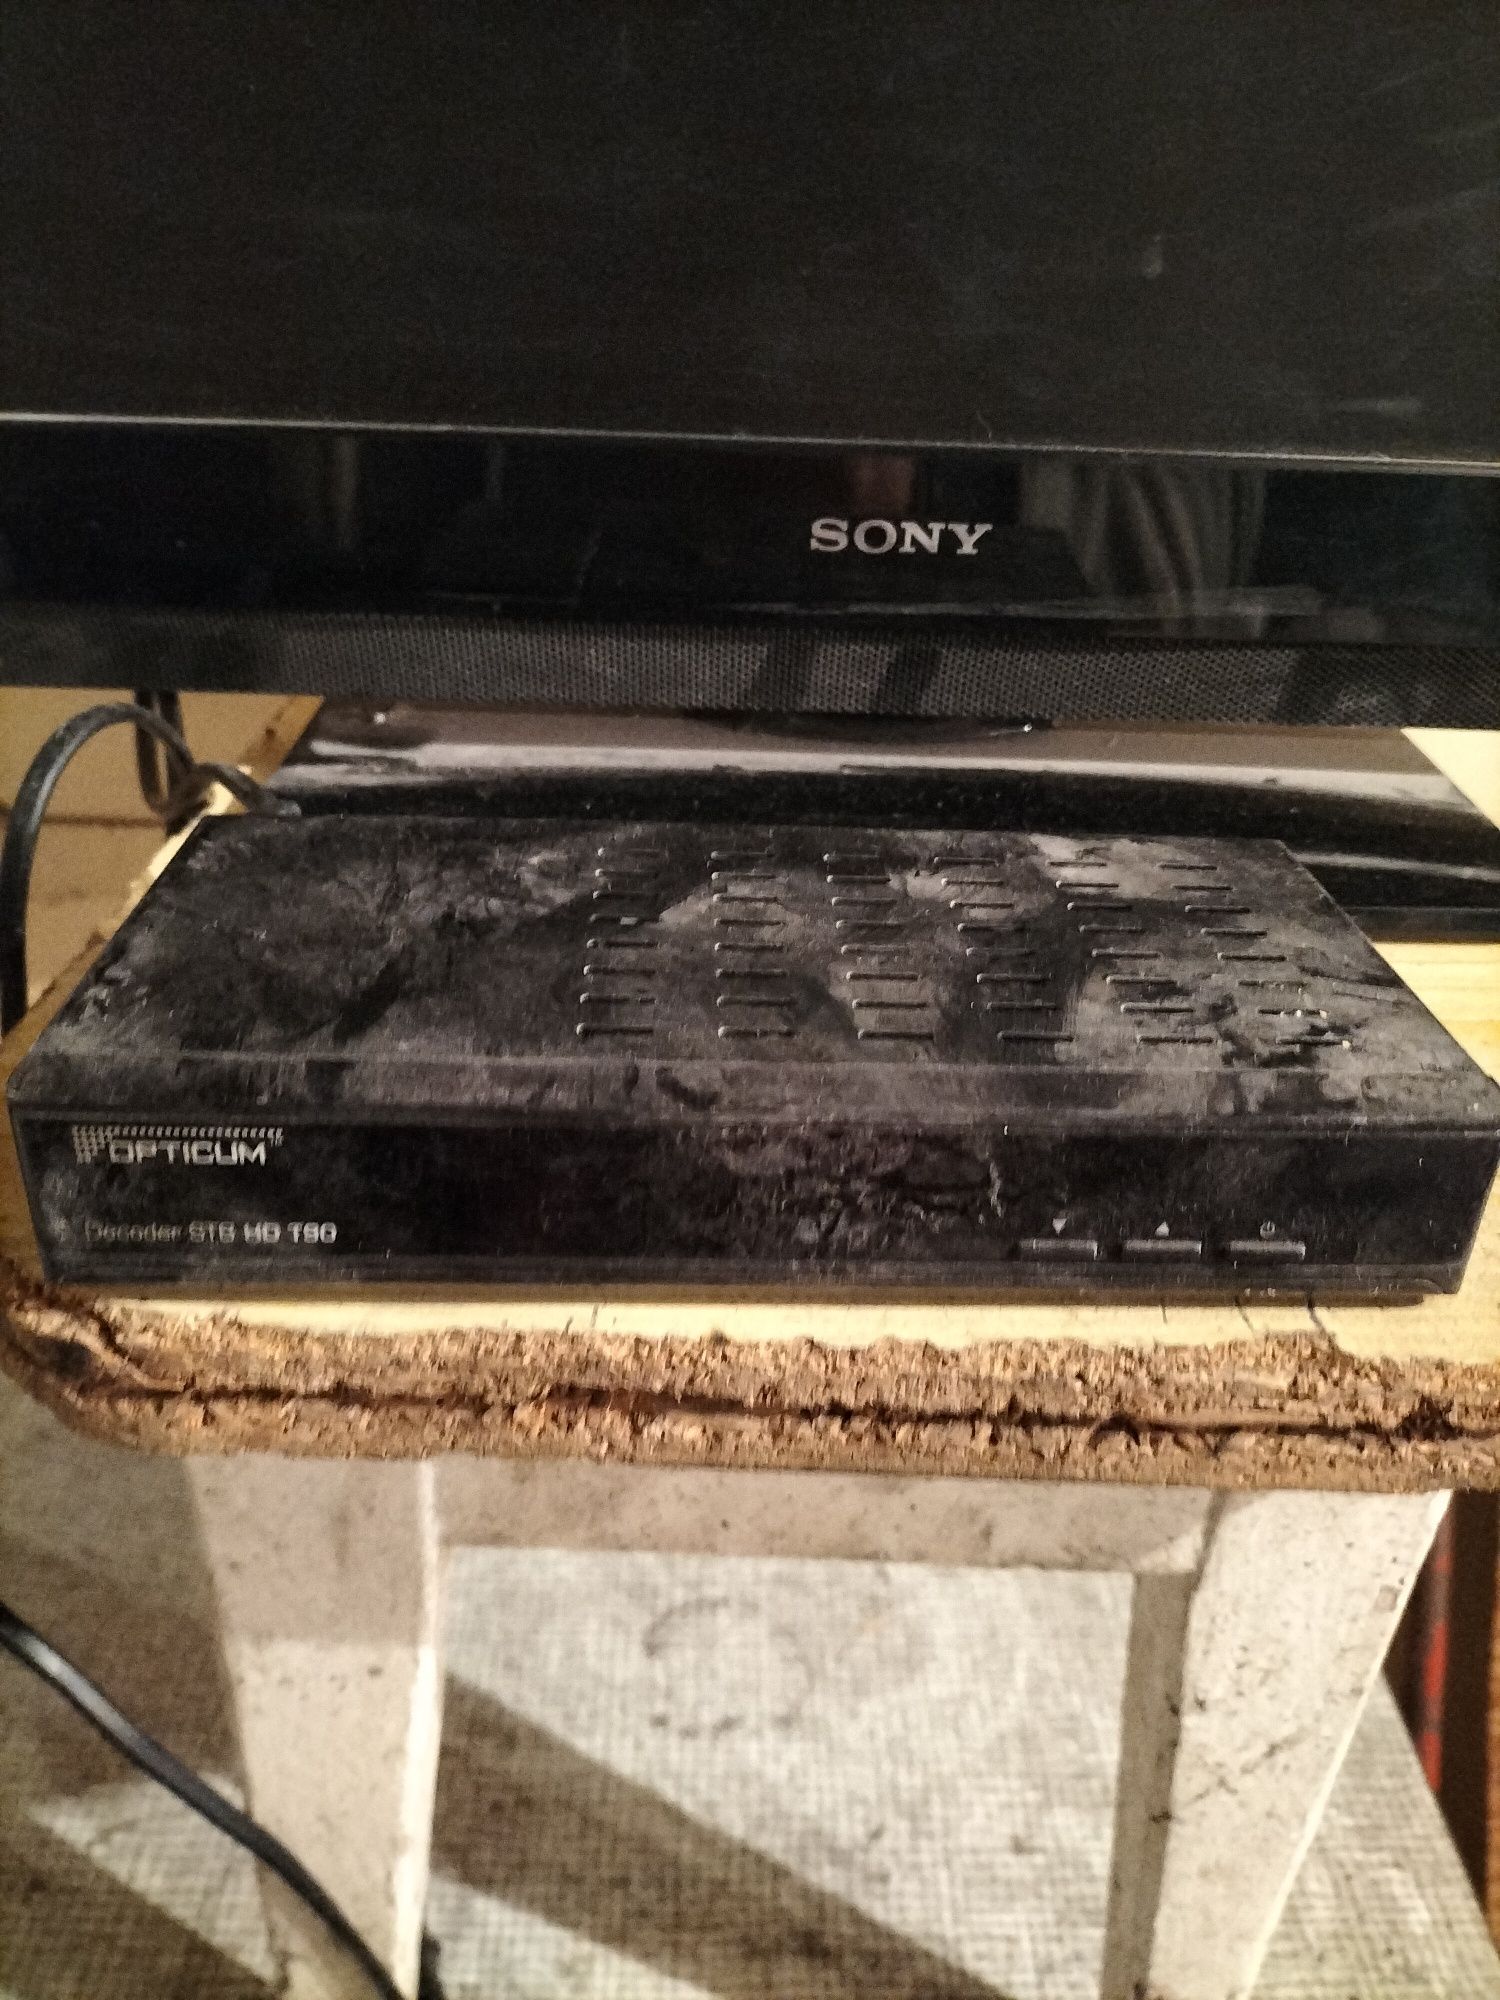 Mały telewizorek z dekoderem firmy Sony sprawny